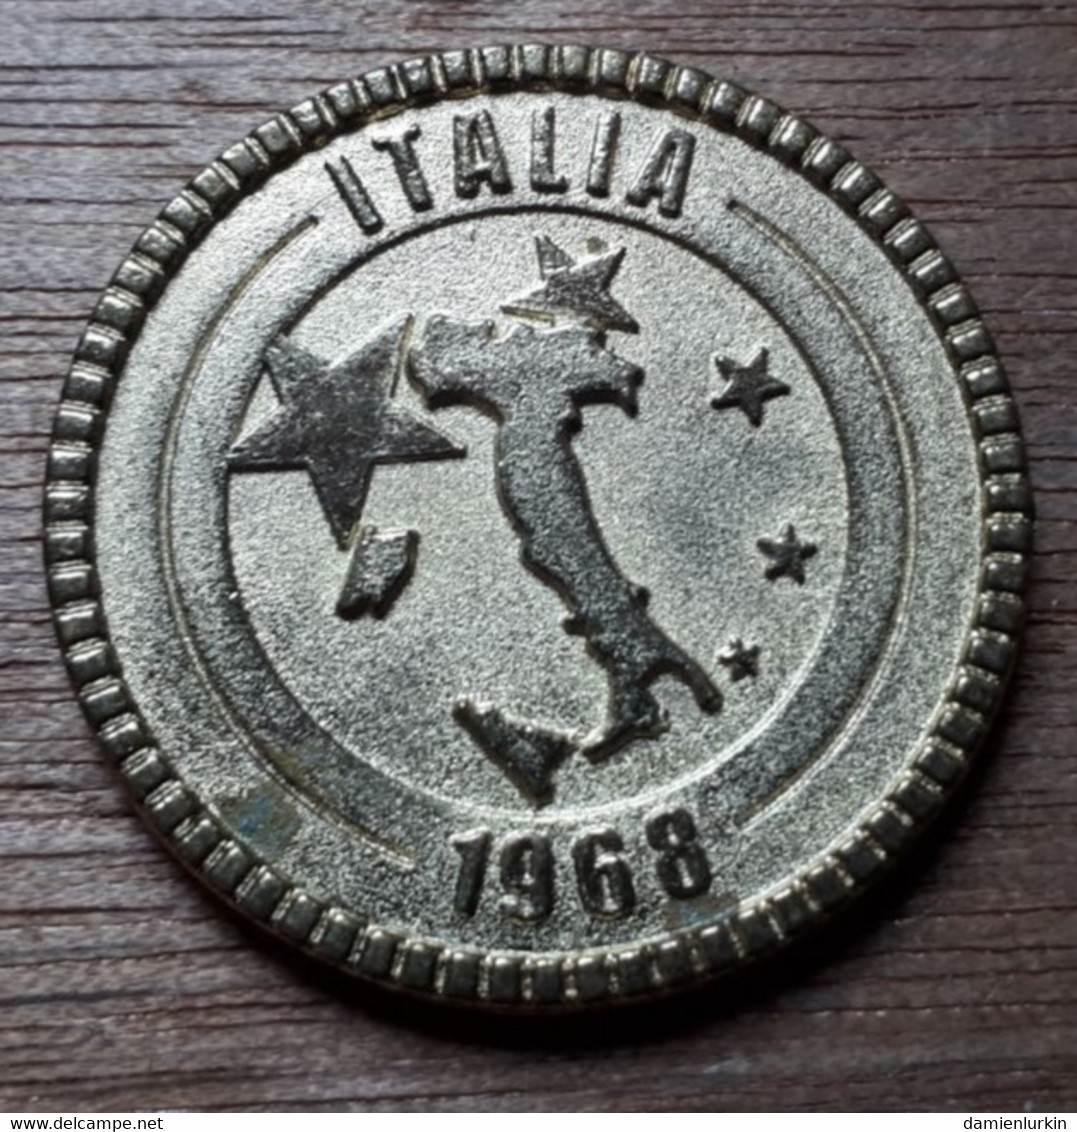 FRANCE MAGICGOAL2000 FOOTBALL ITALIE ITALY ITALIA 1968 - Professionnels/De Société